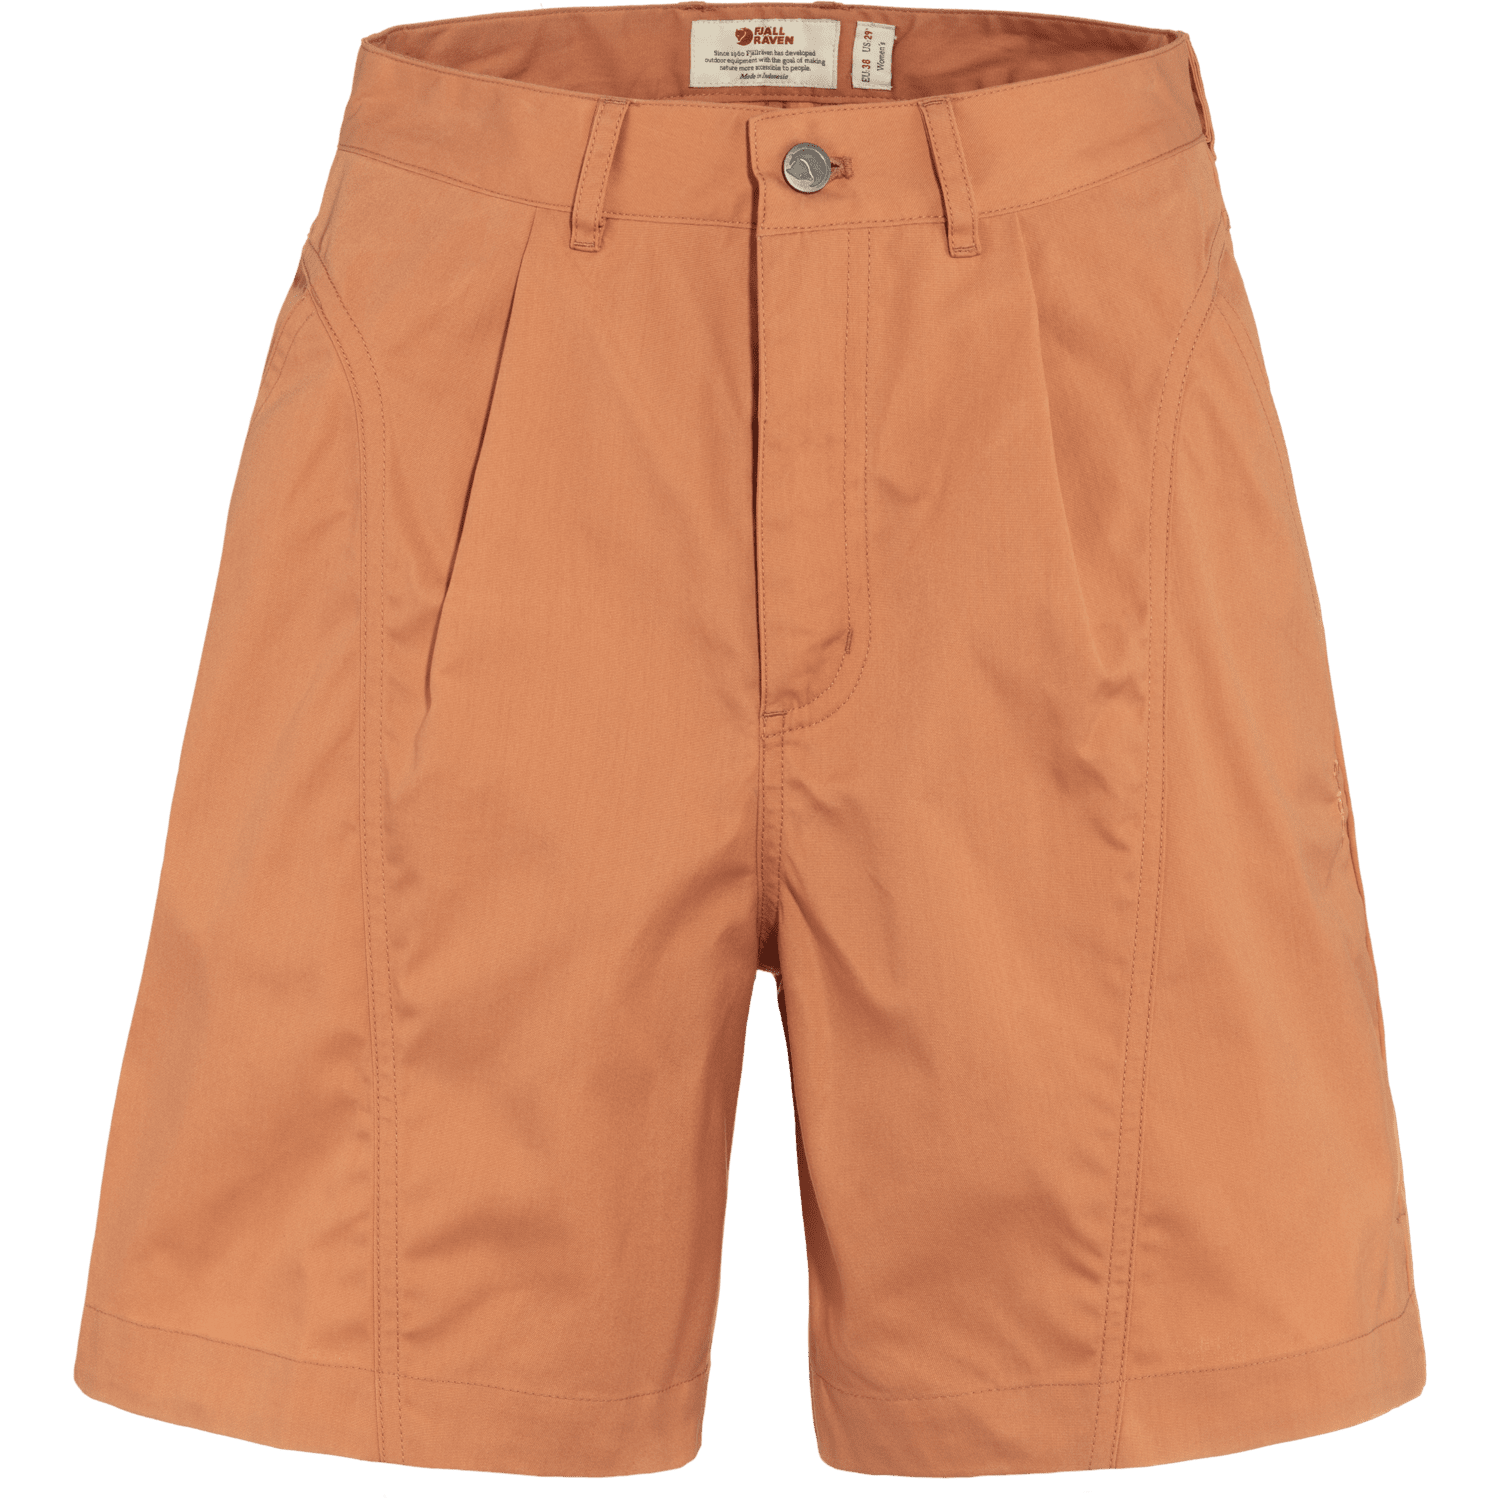 Fjällräven - W's Vardag Shorts - Recycled Polyester & Organic Cotton - Weekendbee - sustainable sportswear